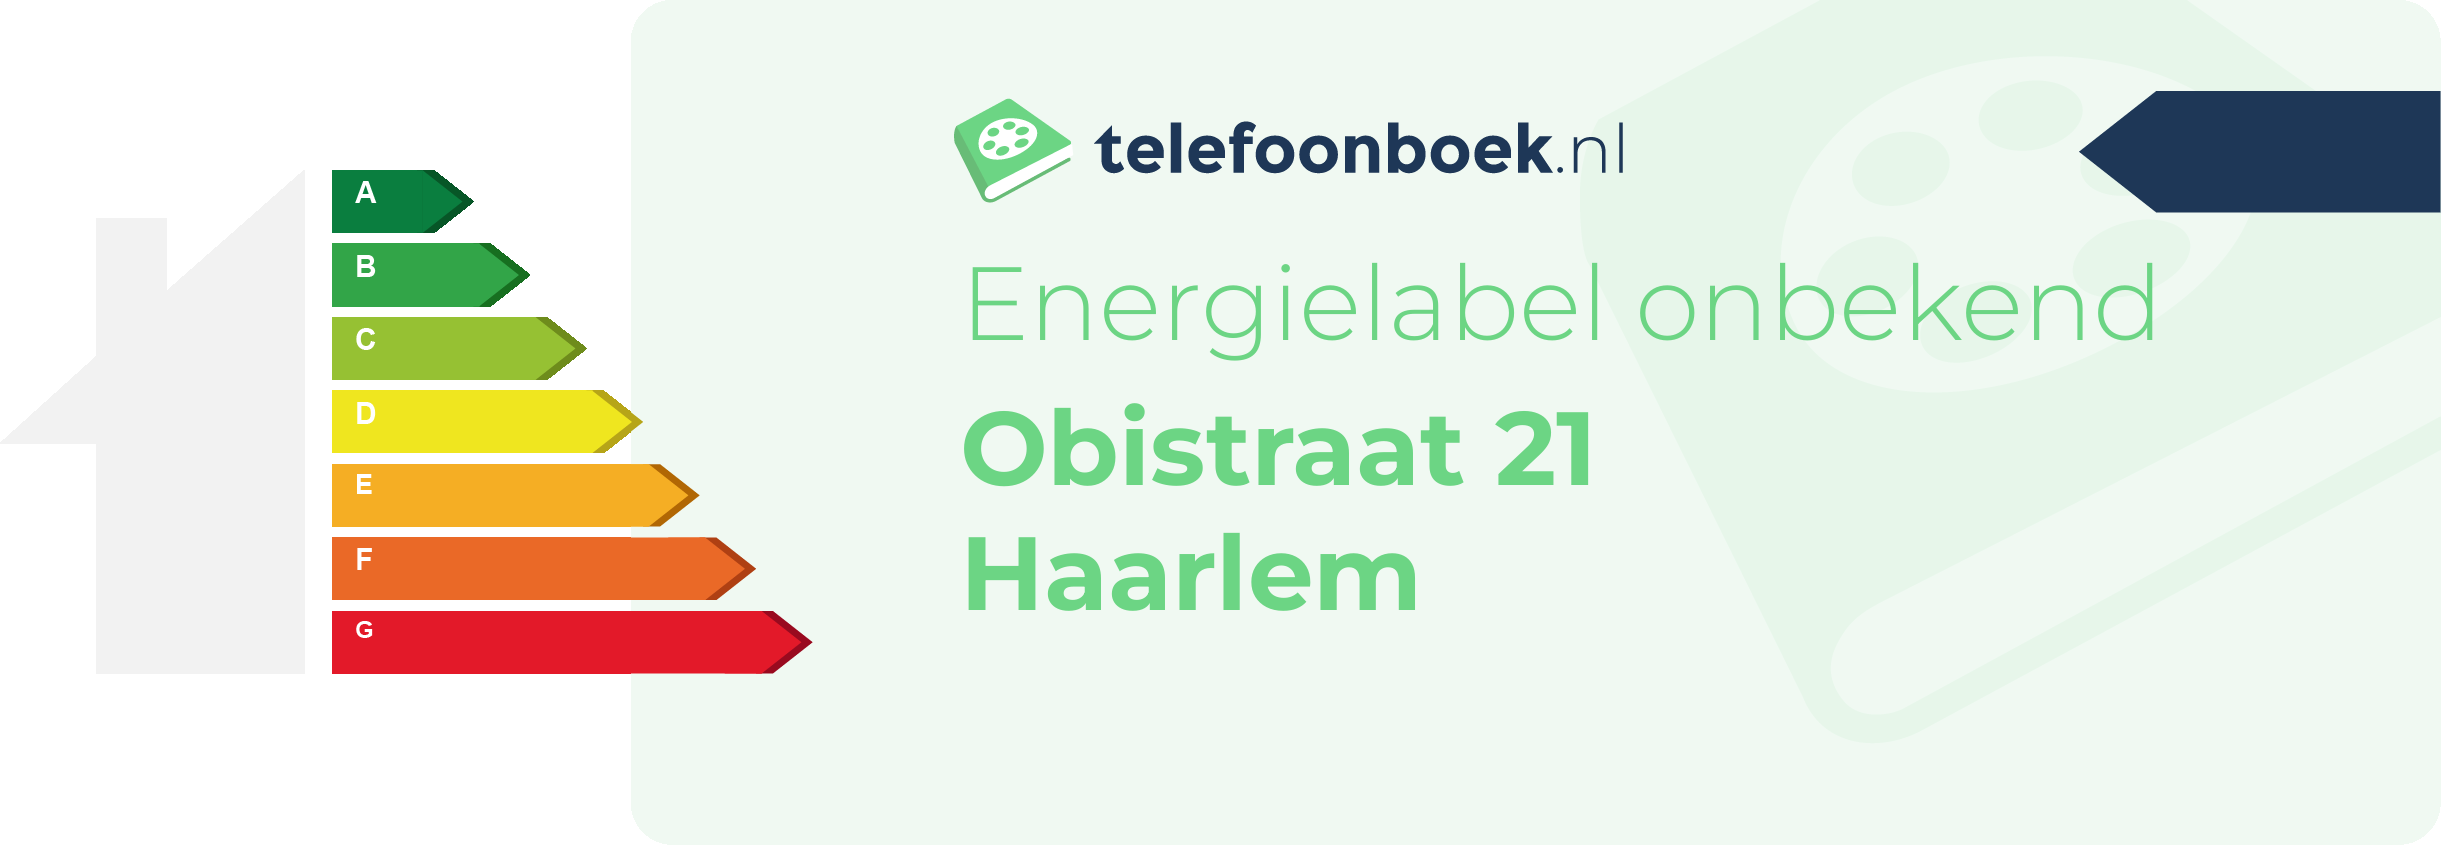 Energielabel Obistraat 21 Haarlem